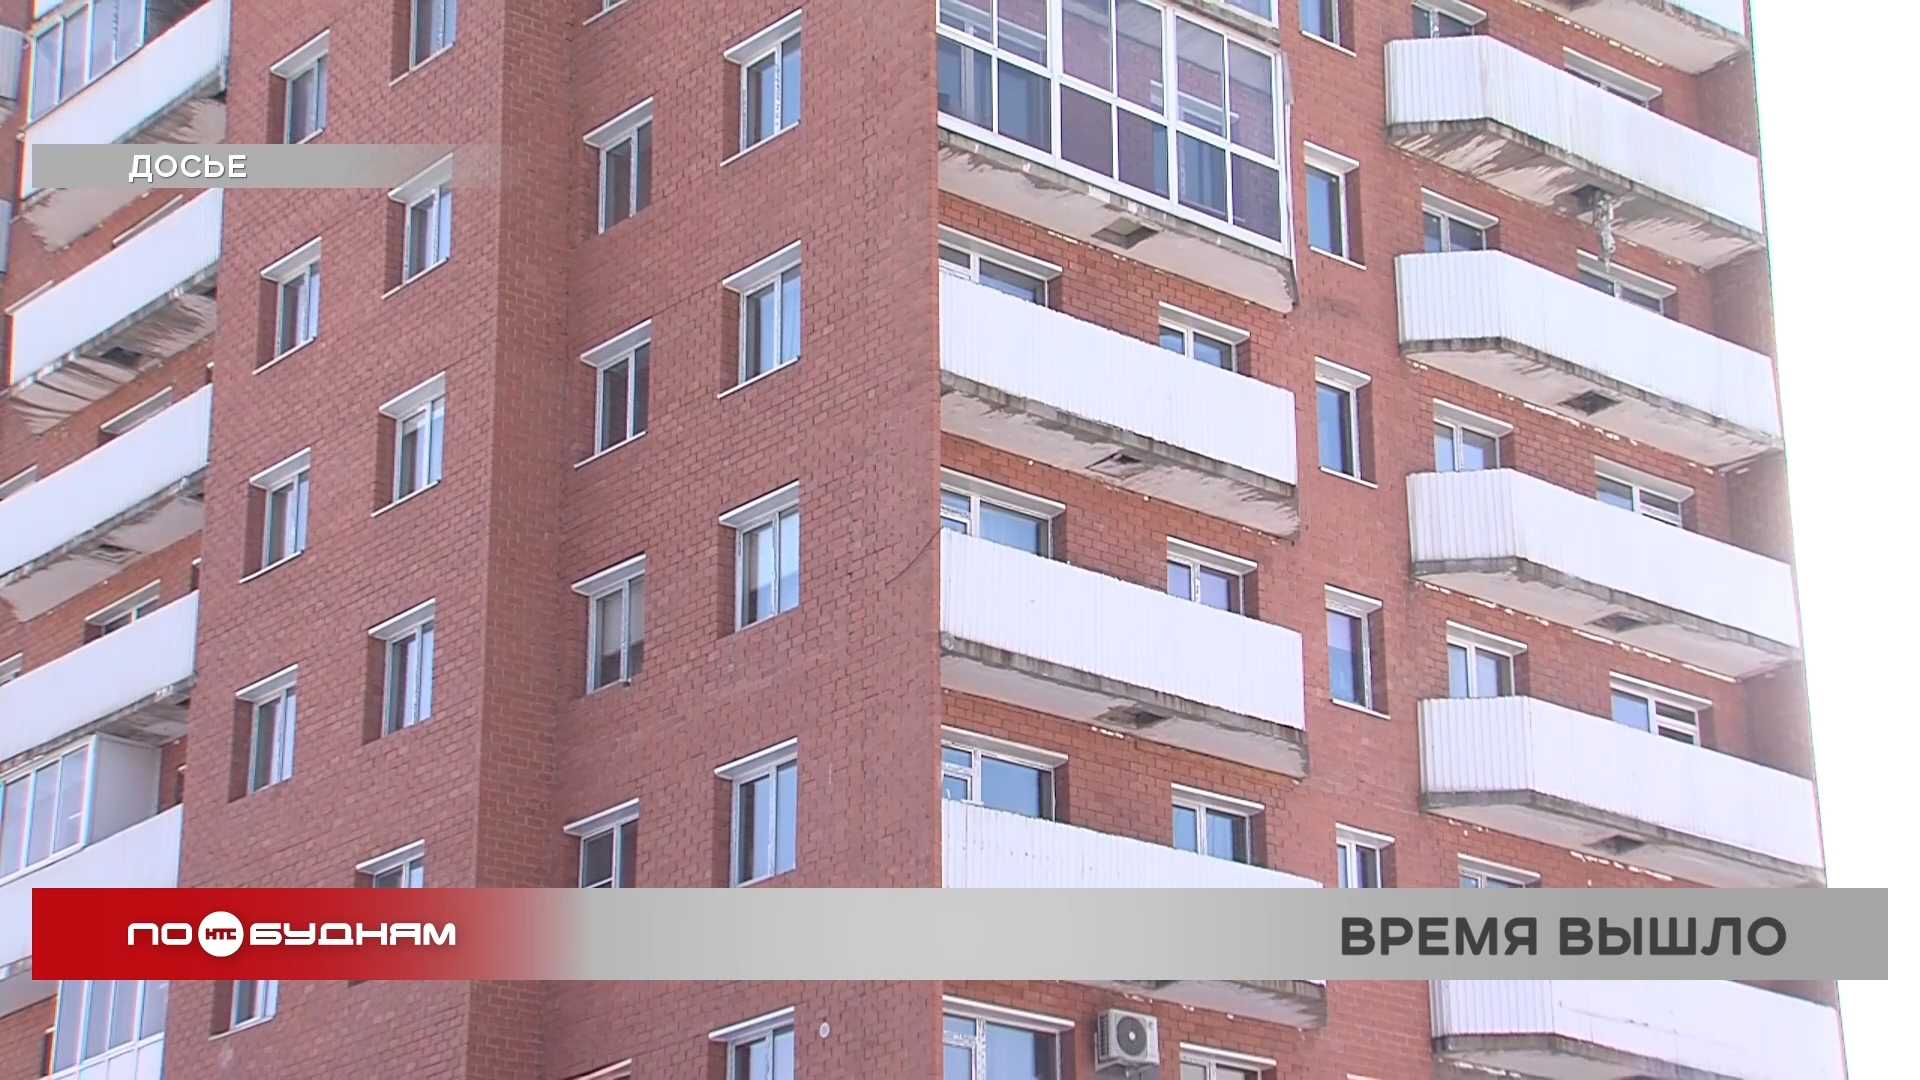 Жители многострадальной многоэтажки на ул. Пискунова в Иркутске хотят обратиться в Верховный суд